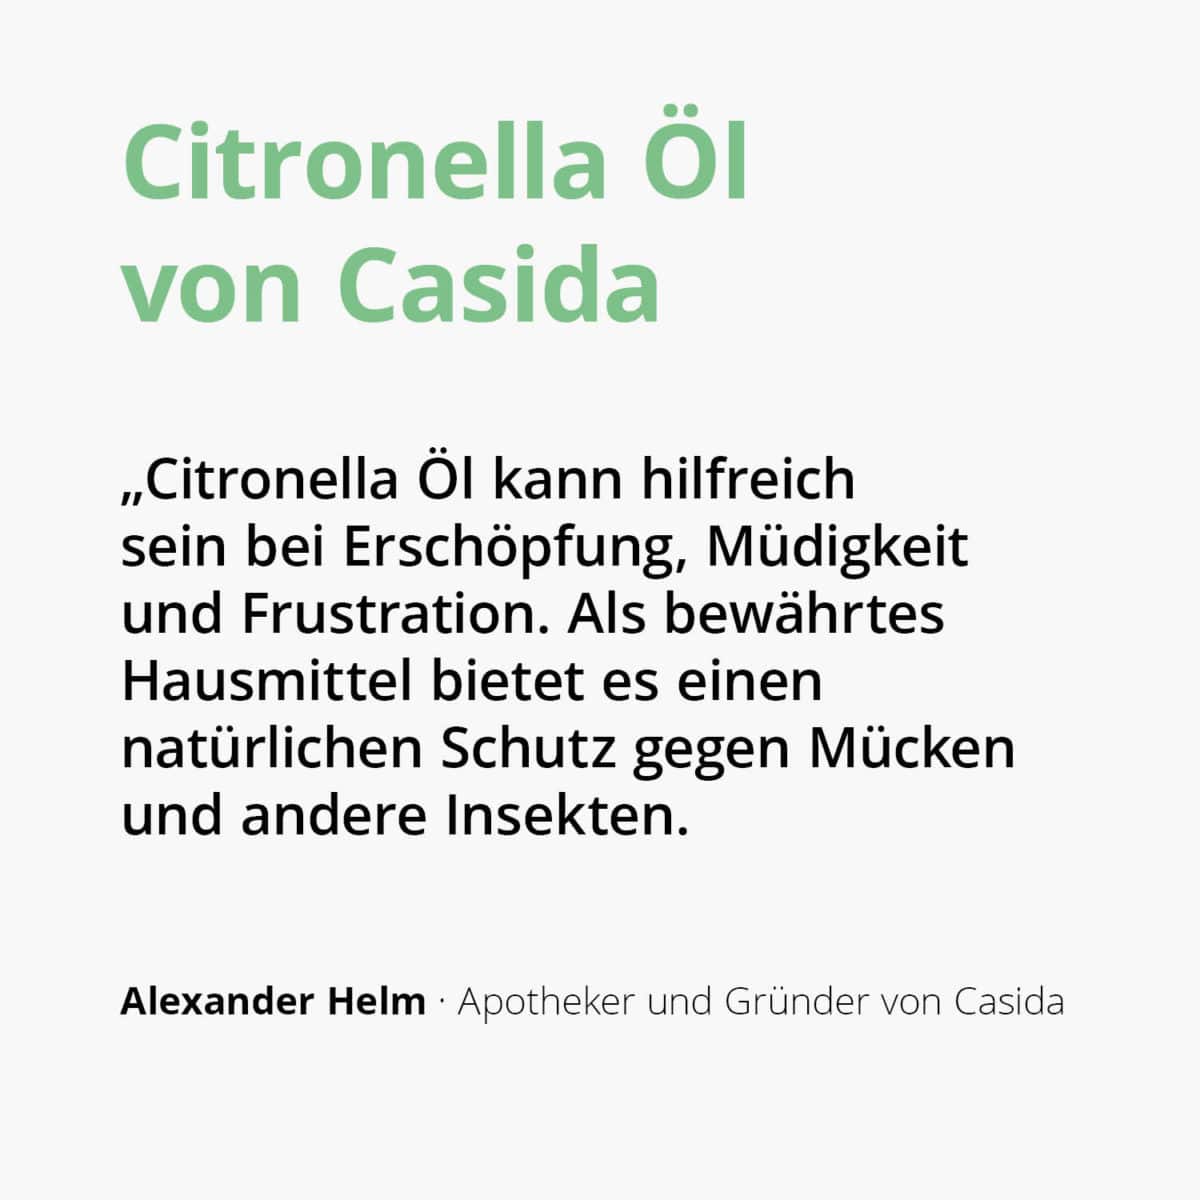 Casida Citronella naturrein – 5 ml 18186063 PZN Apotheke ätherische Öle Diffuser Cymbopogon winterianus2